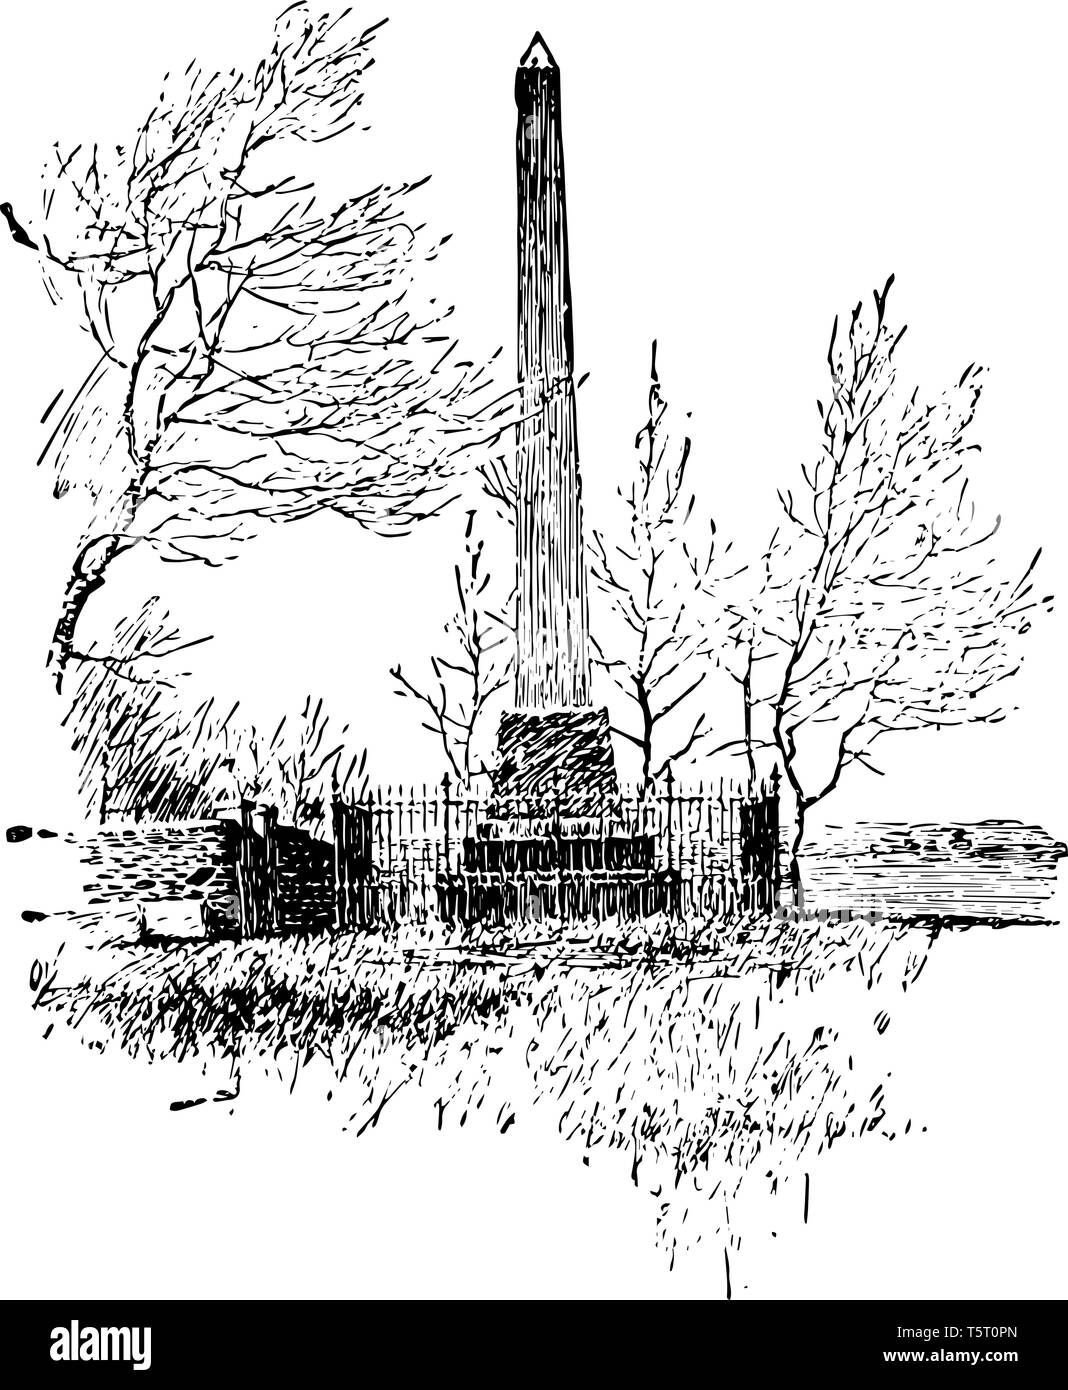 Maria sfera Washington morta il 25 agosto 1789, monumento costruito in memoria di Maria di Washington di Fredericksburg, Virginia vintage disegno della linea. Illustrazione Vettoriale